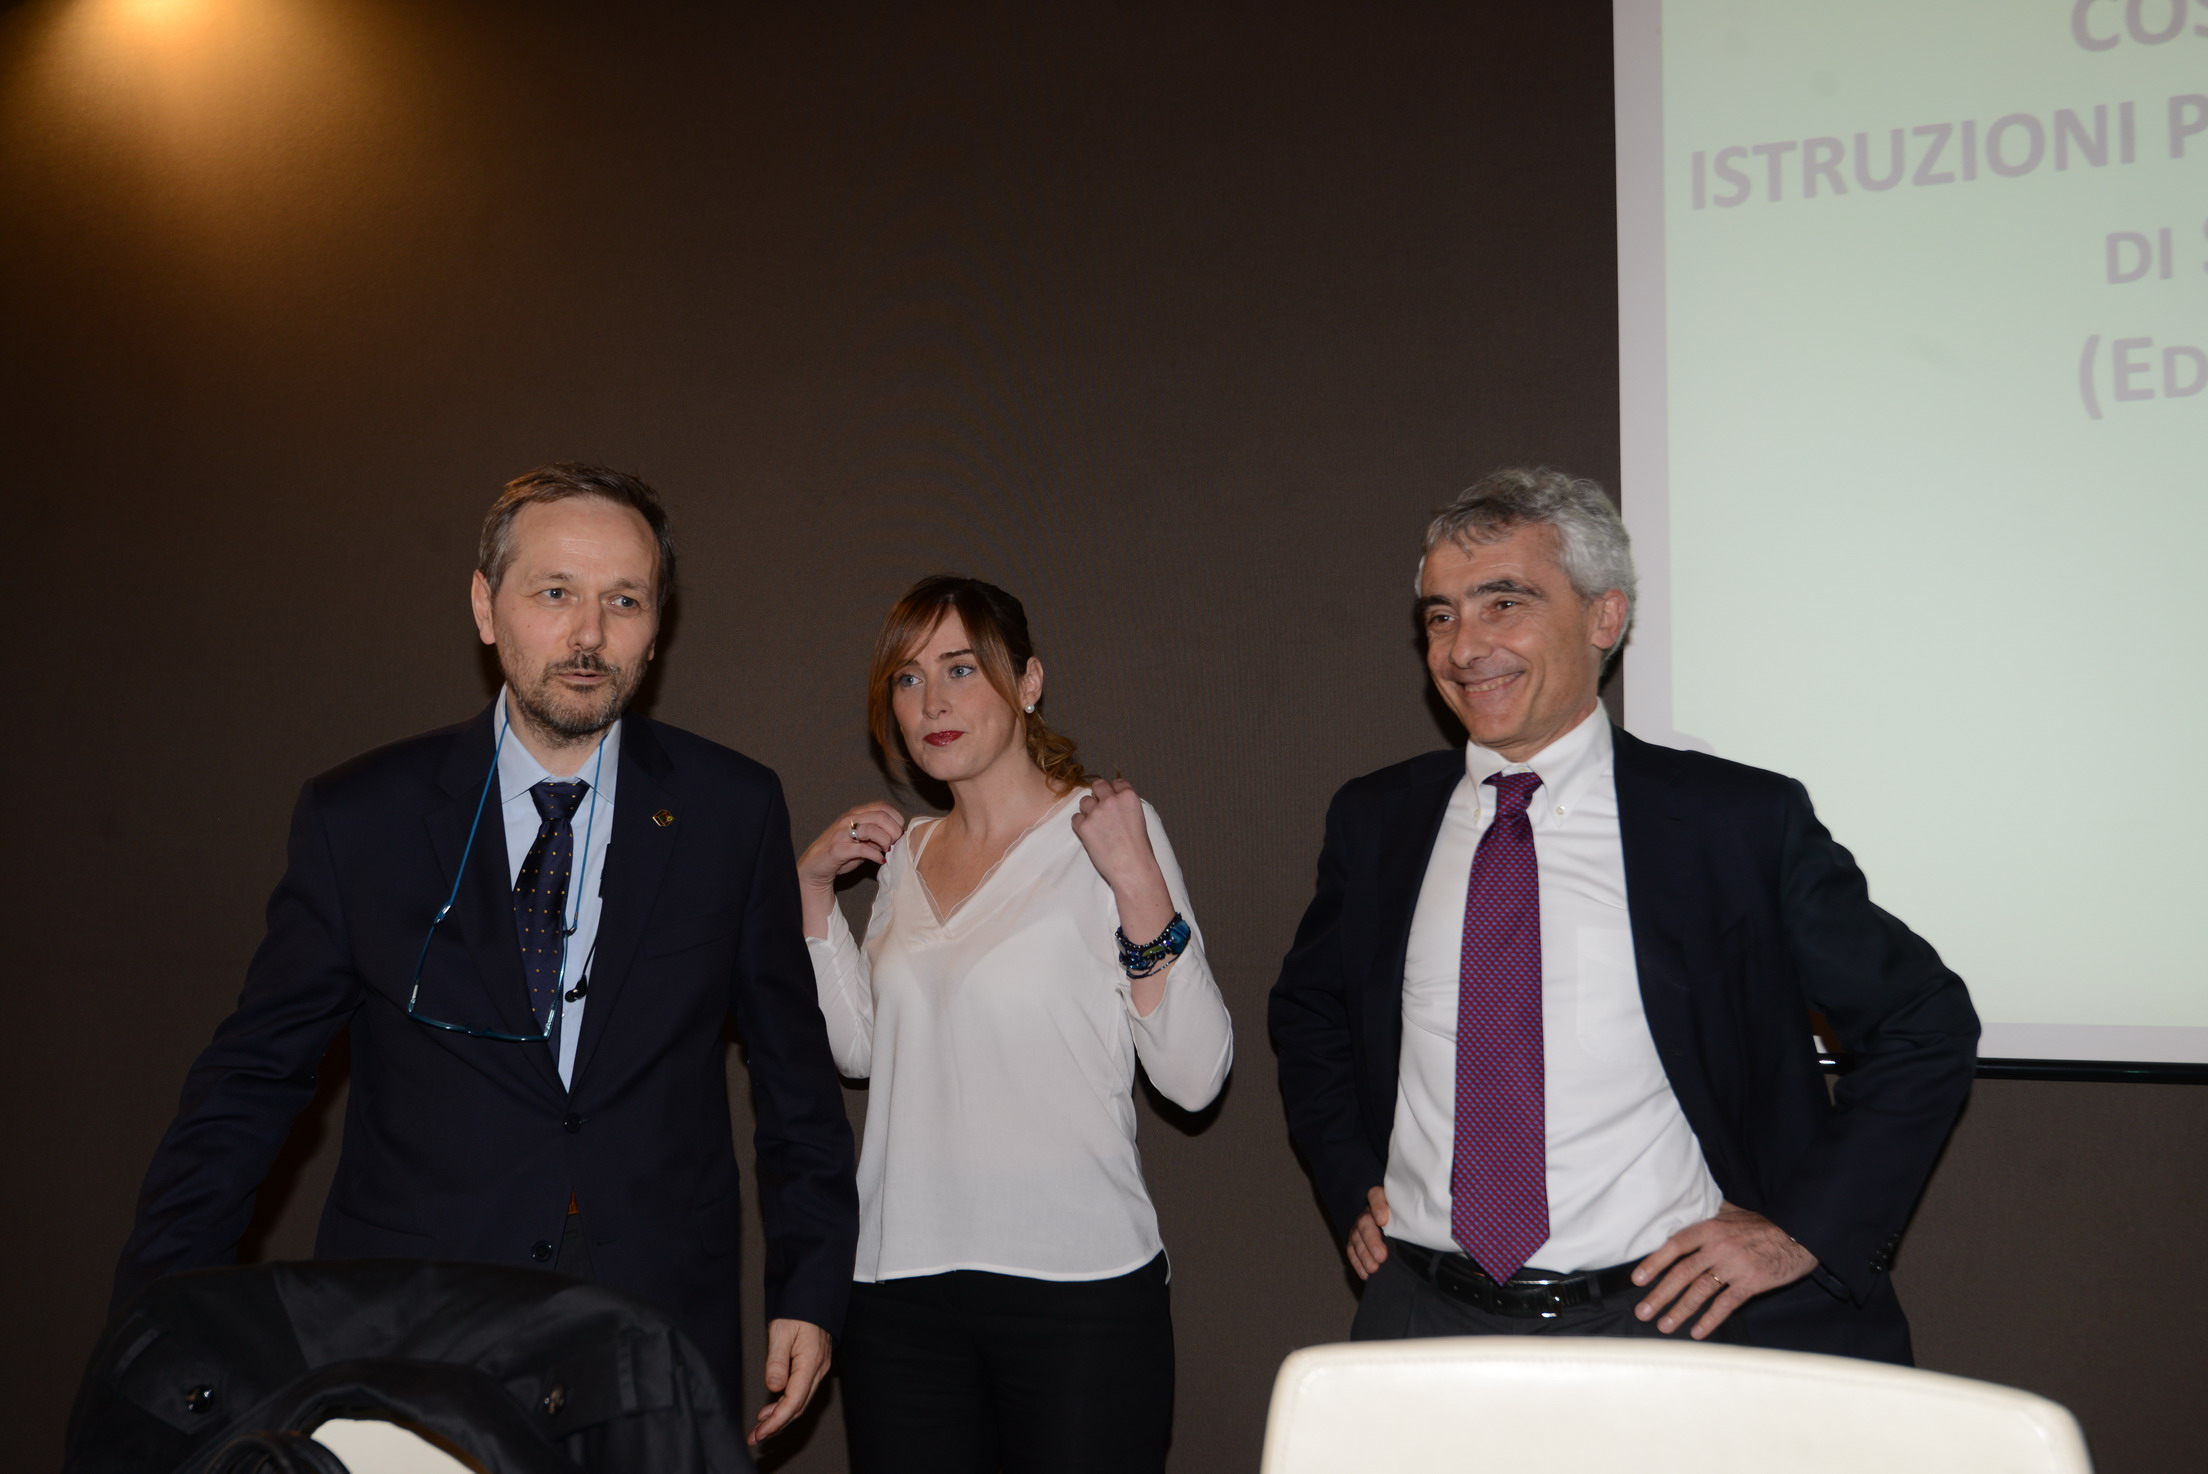 Stefano Quintarelli, Maria Elena Boschi e Tito Boeri